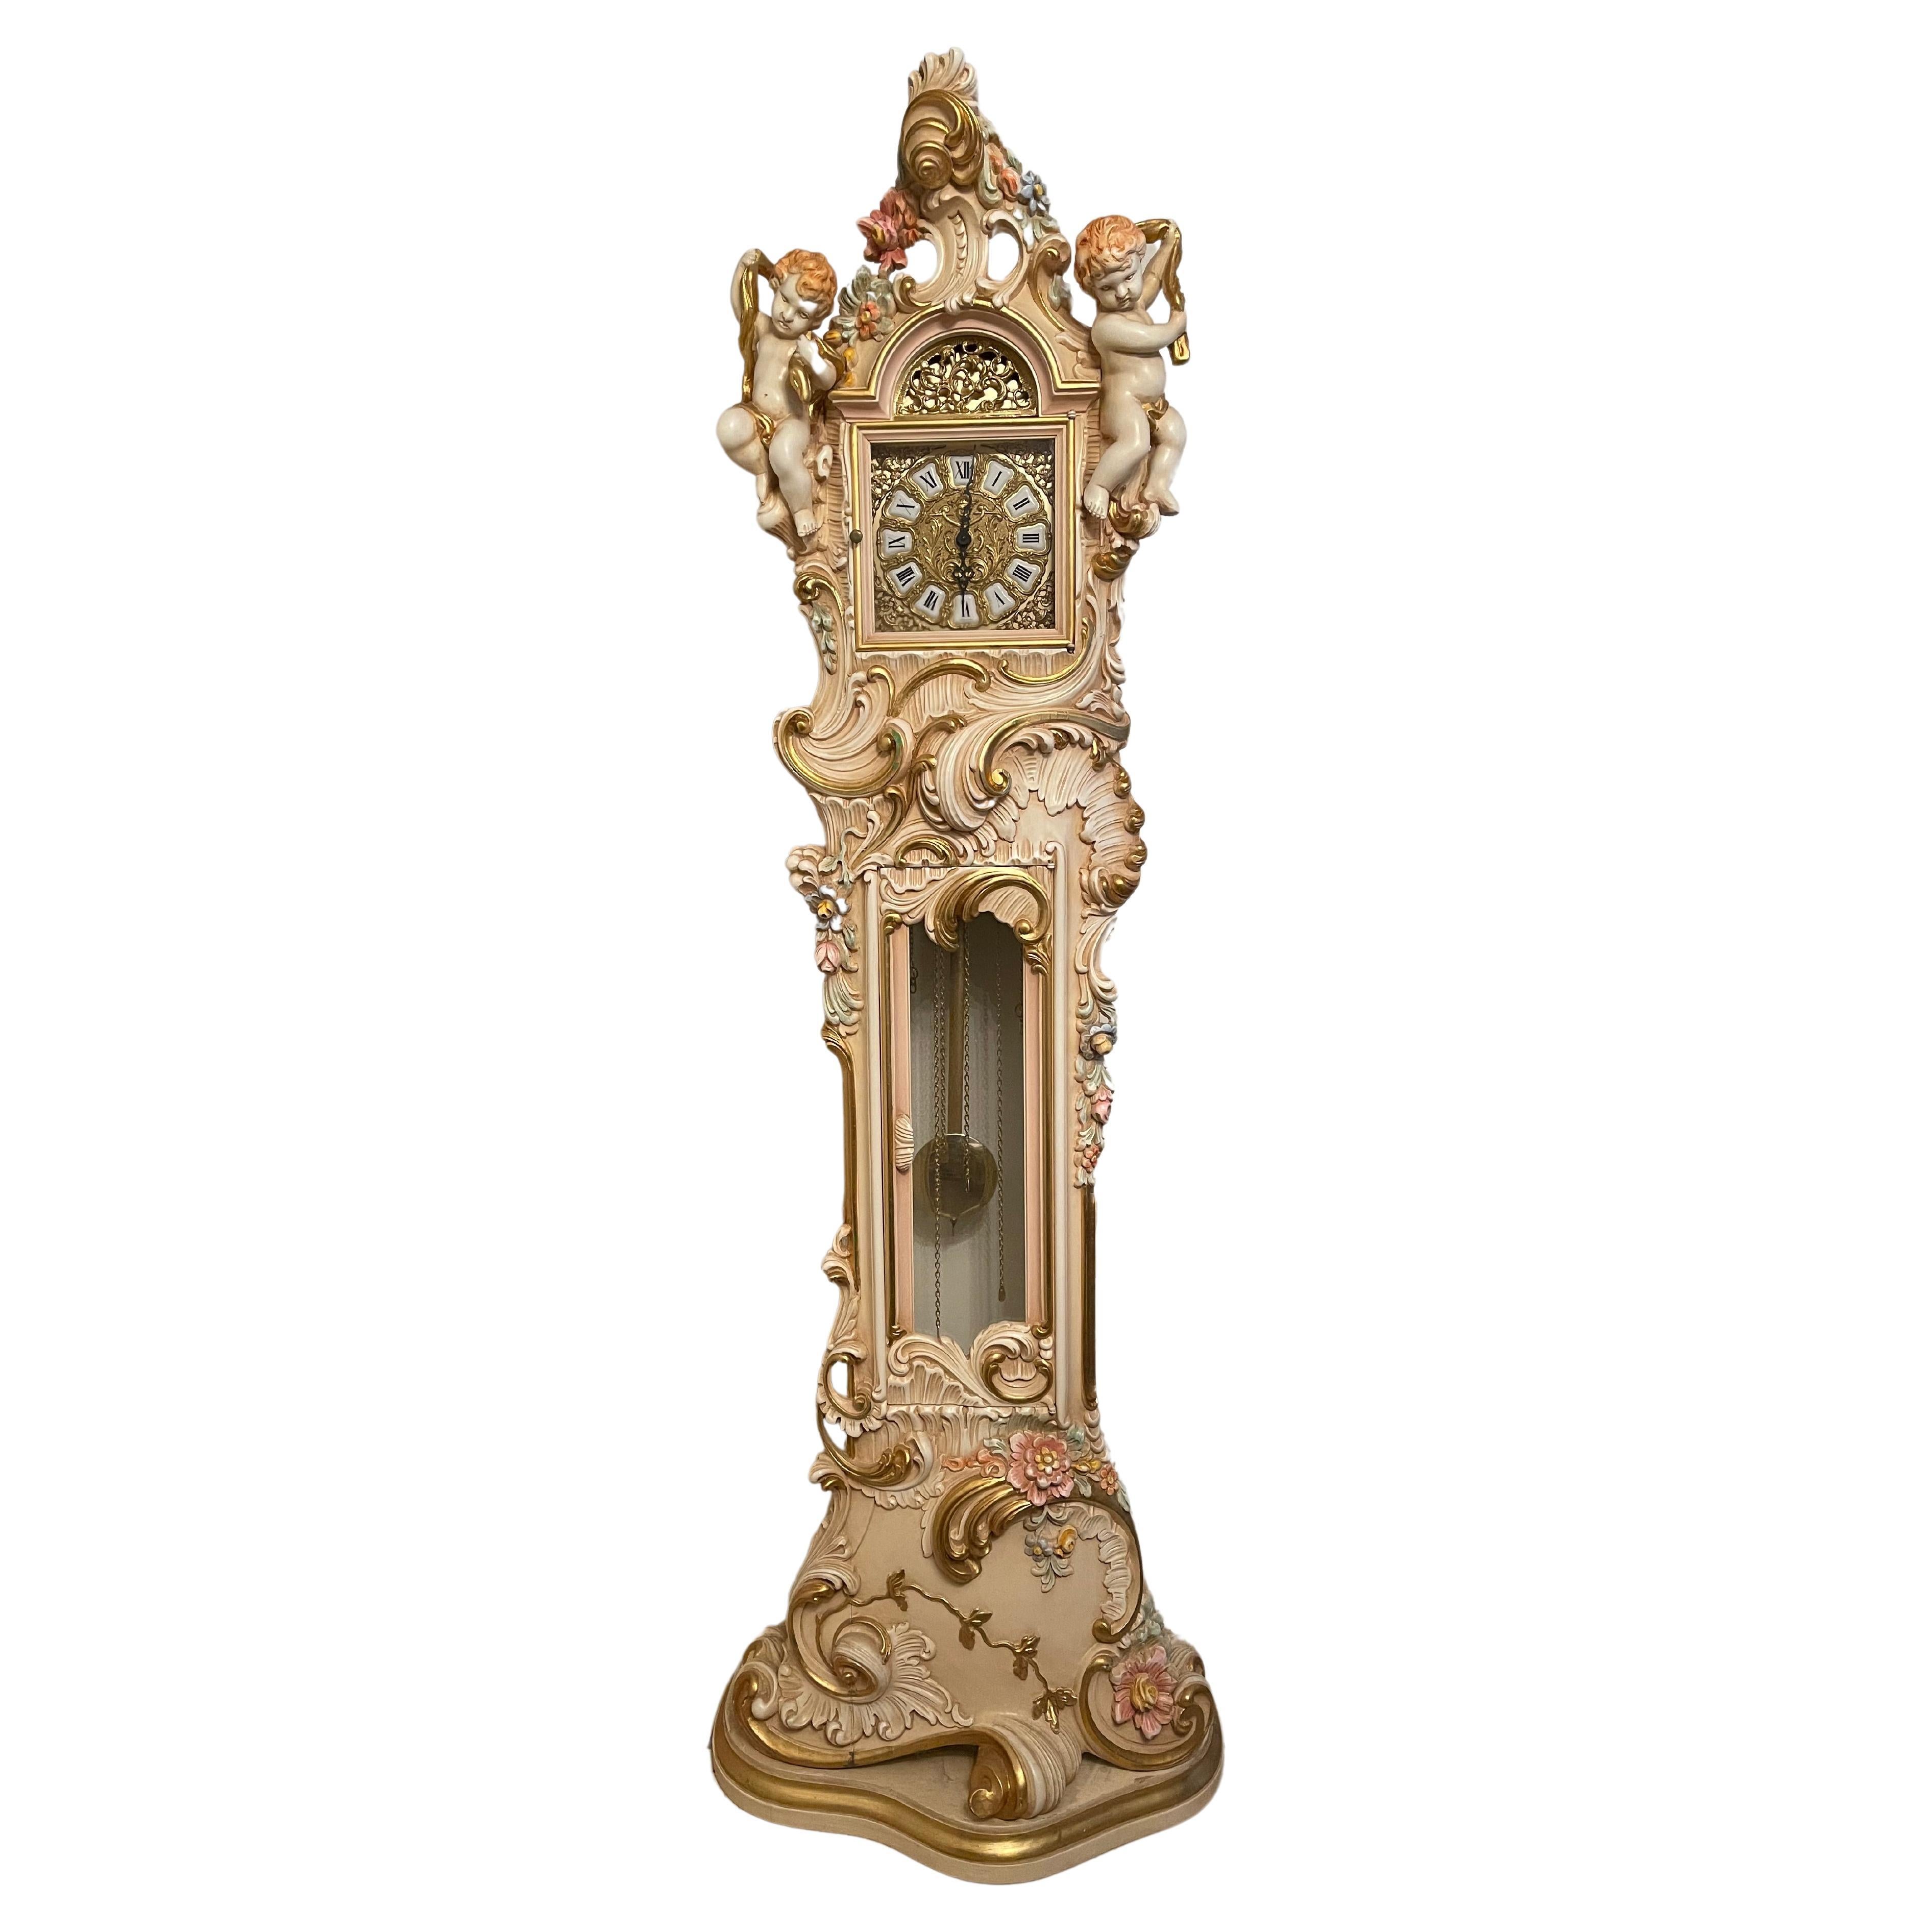  Orologio a Pendolo in Legno Laccato Style barocco veneziano 700